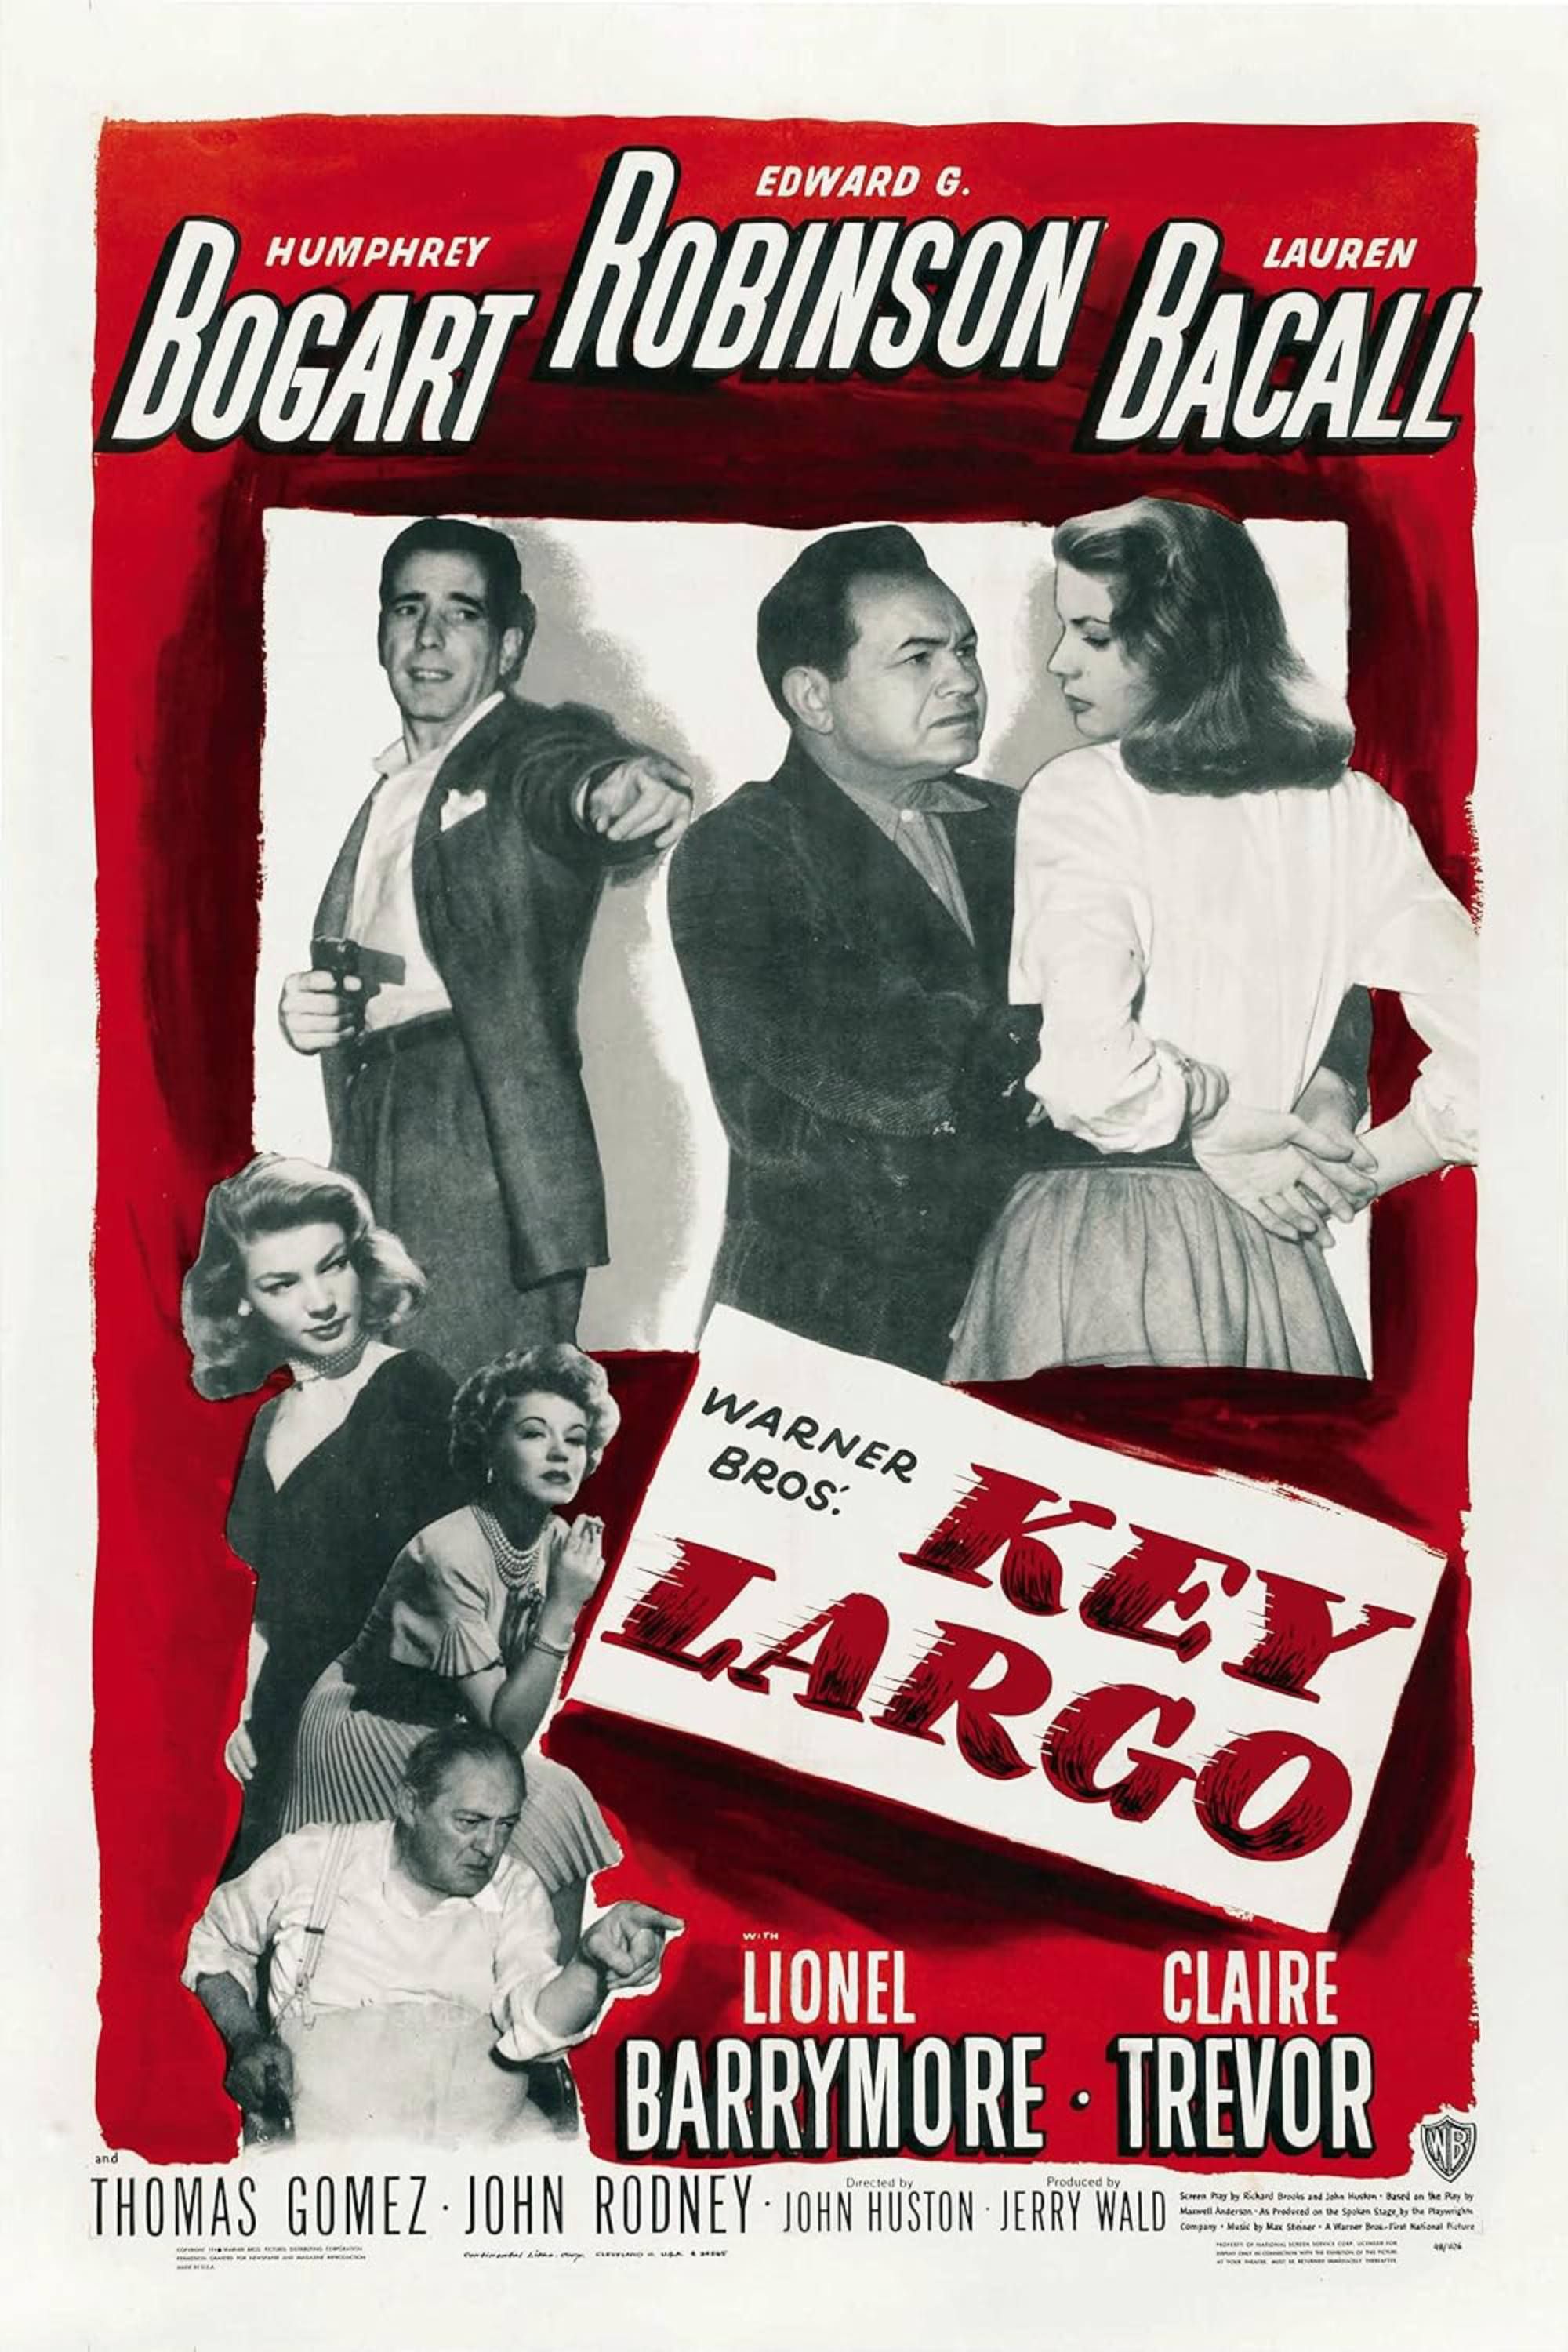 Key Largo - Pôster - Humphrey Bogart, Edward Robinson e Lauren Bacall